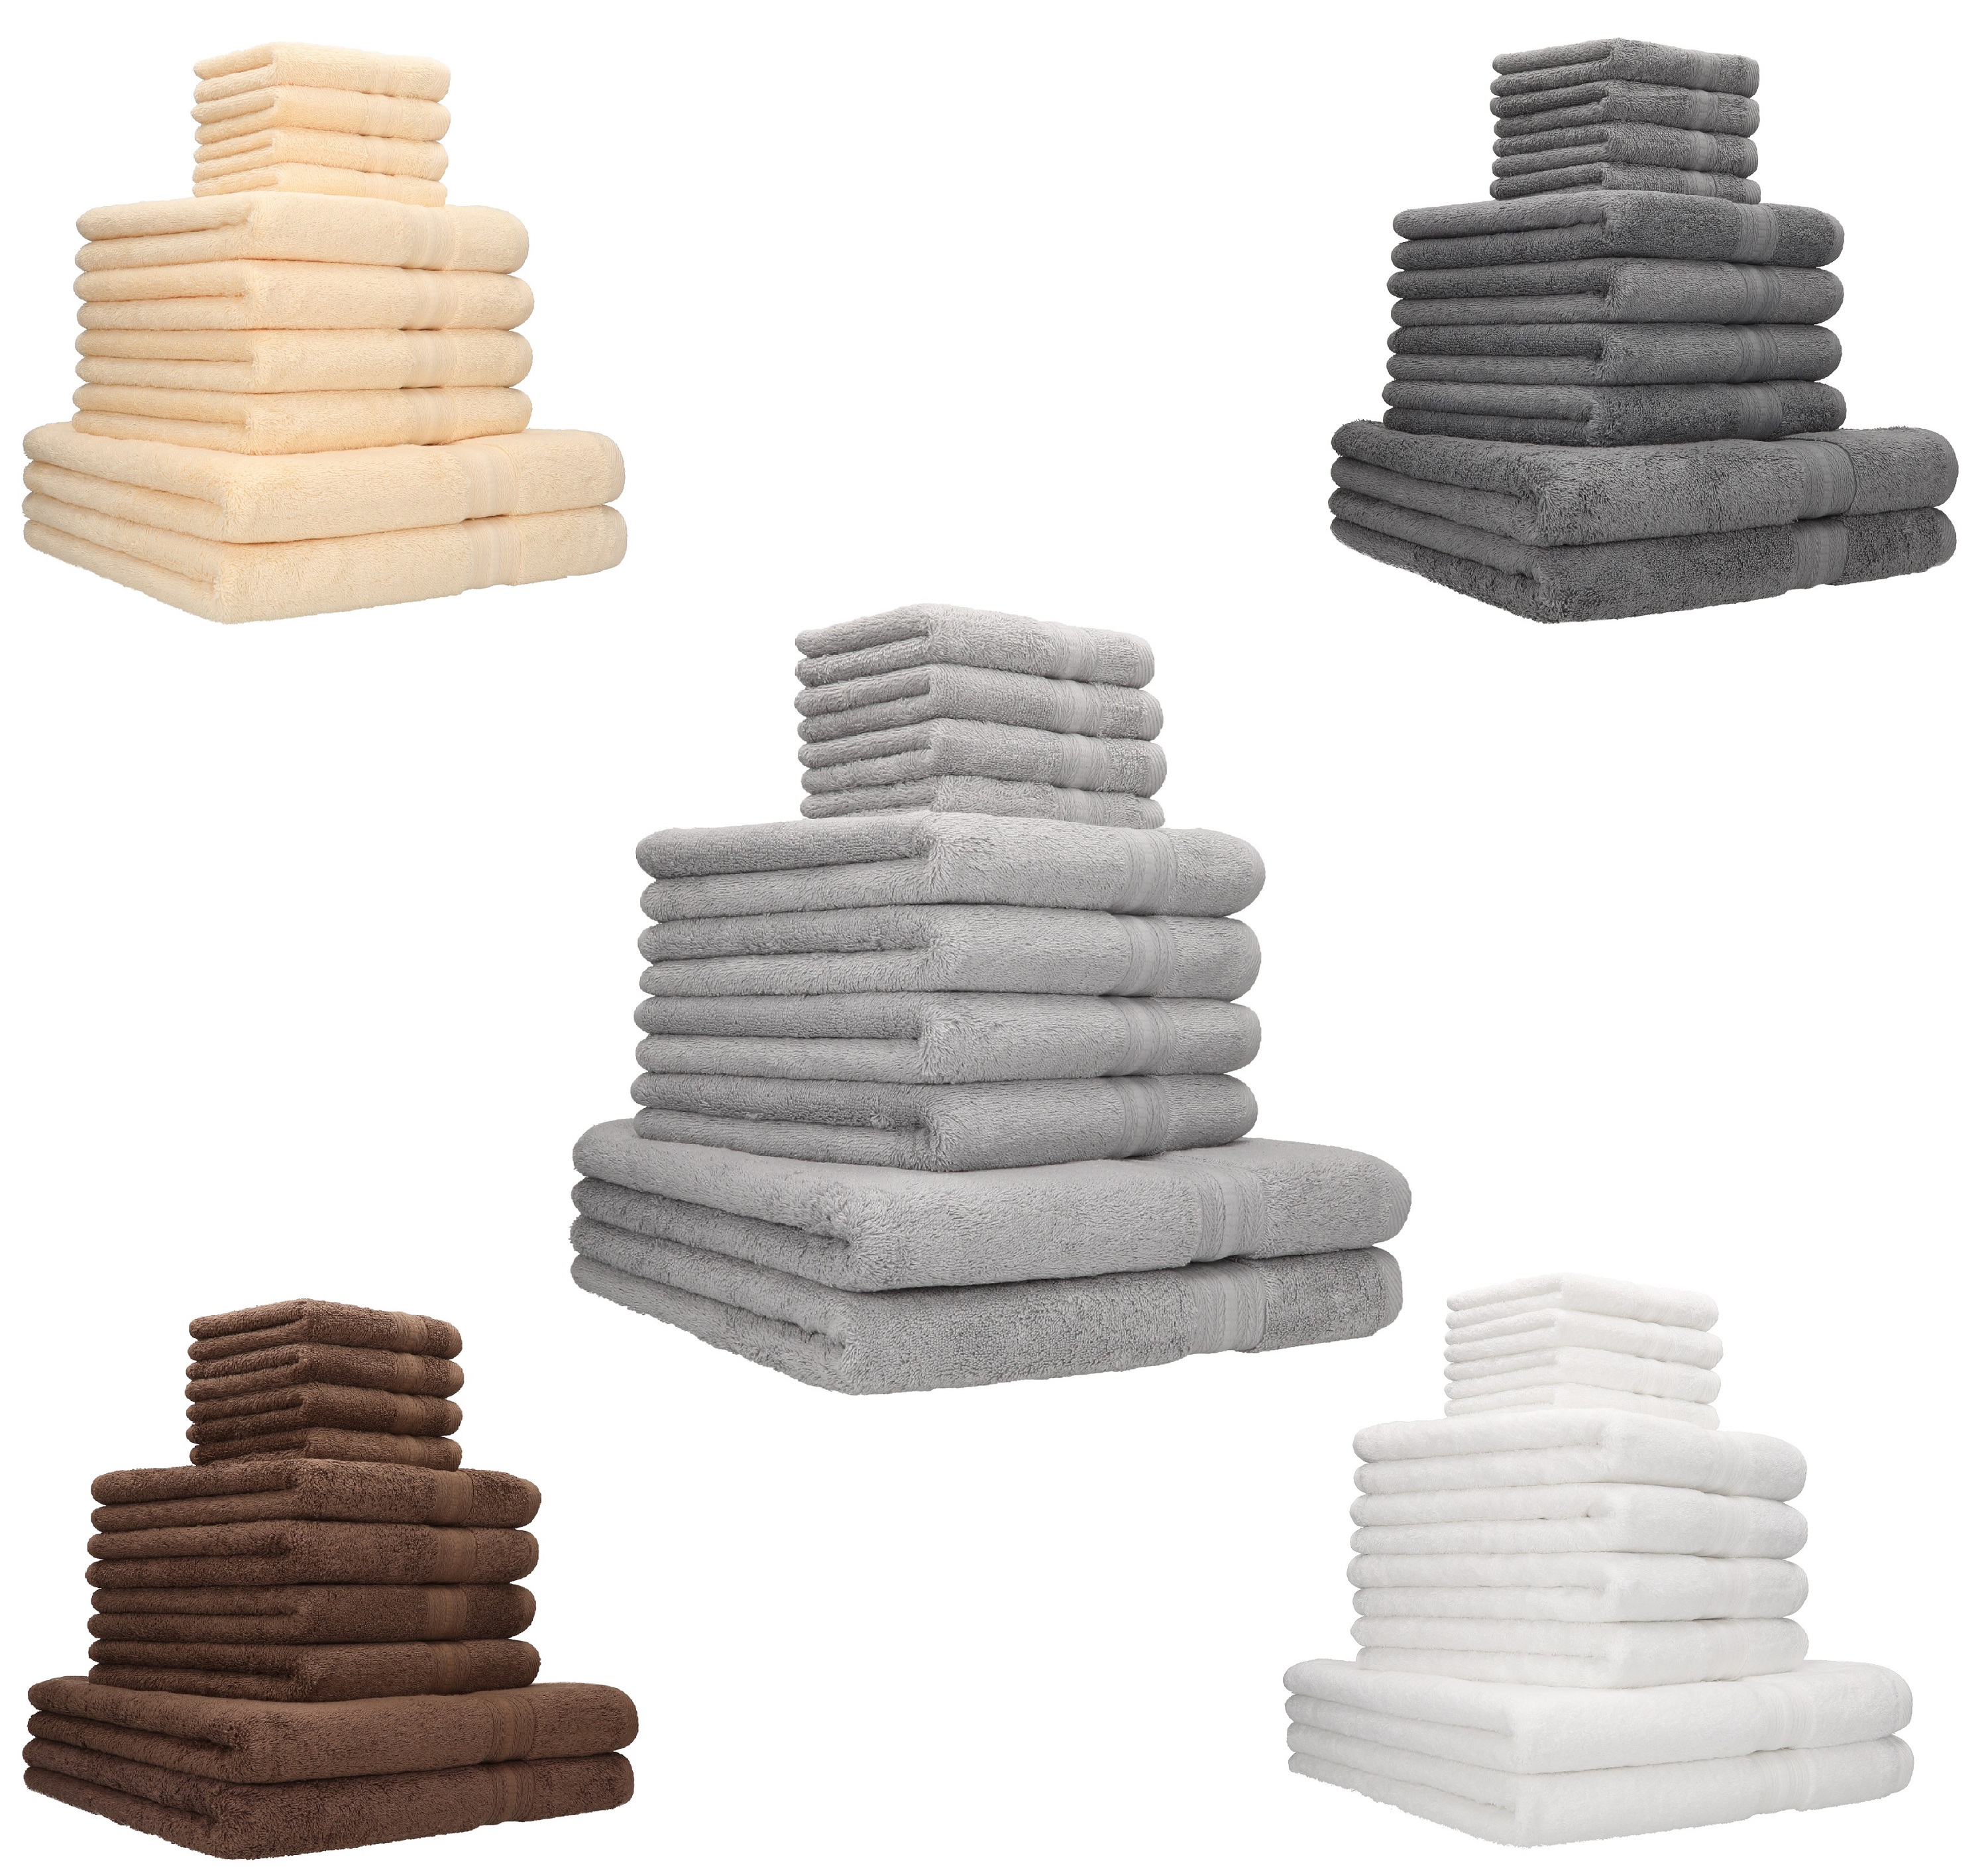 Betz 10-tlg. Handtuch-Set Baumwolle 4 600g/m² 100% 2 Luxus GOLD Qualität Duschtücher